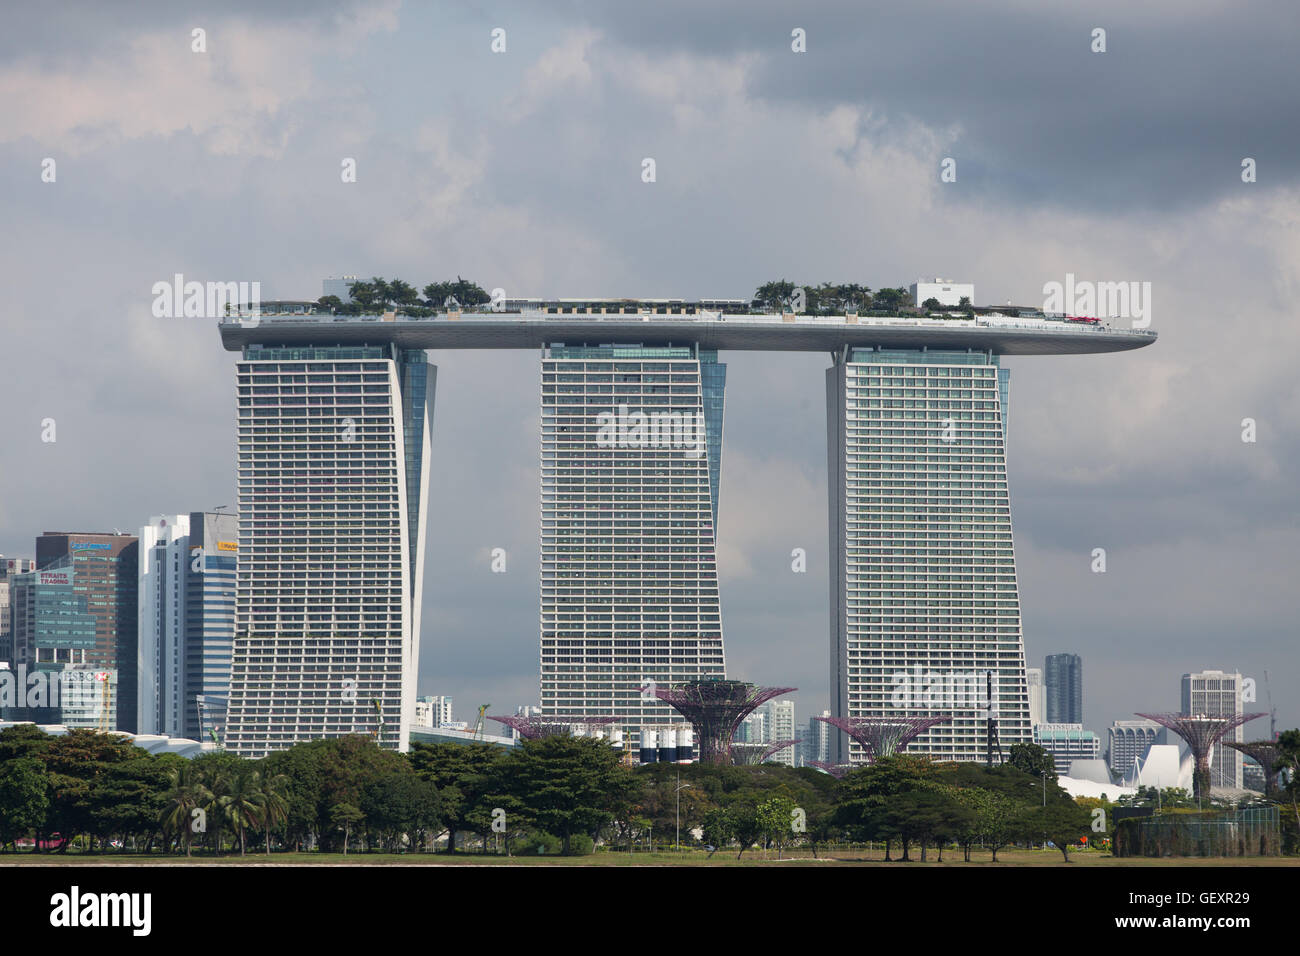 Architekturdesign des Marina Bay Sands Hotel and Gardens by the Bay in Singapur Stockfoto